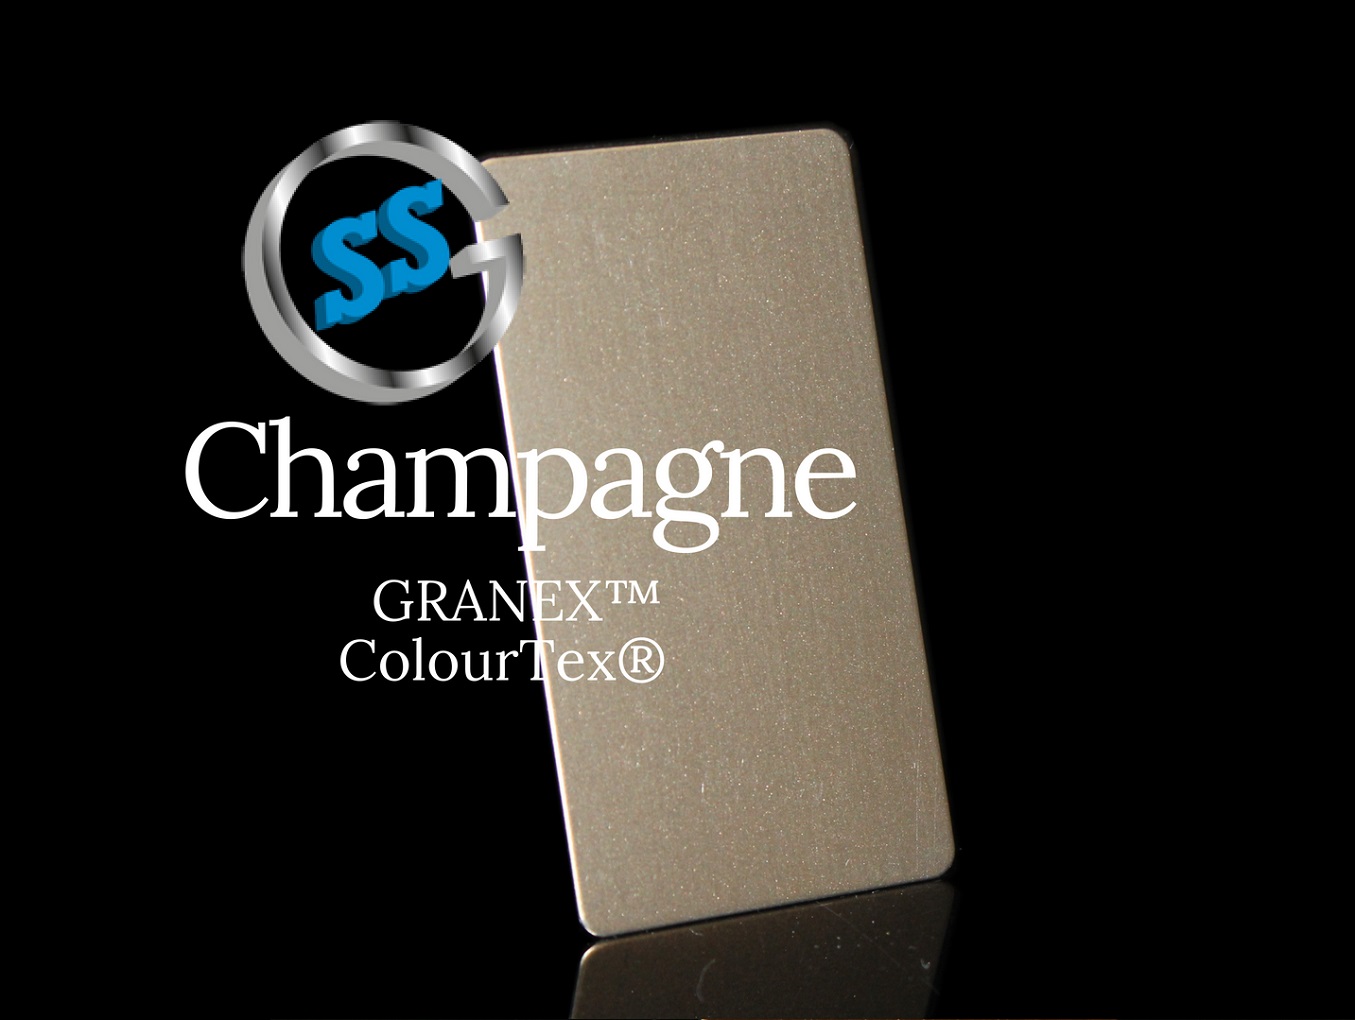 Inox elettro-colorato ColourTex Champagne Granex, inox micropallinato colorato galvanico champagne, inox Champagne Granex